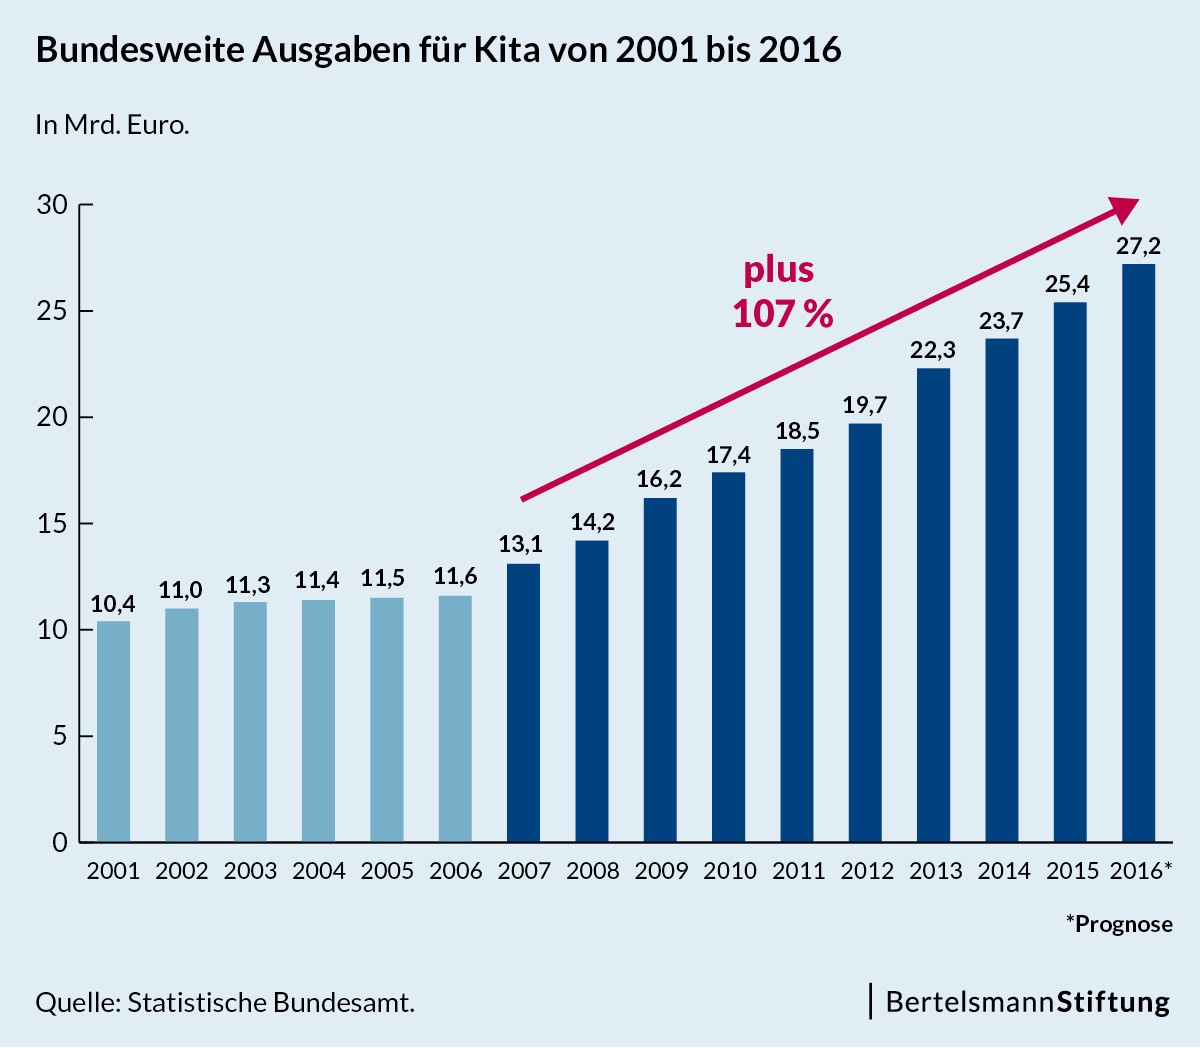 Eine Zeitreihe der bundesweiten Ausgaben für Kitas von 2001 bis 2016. Zwischen 2007 und 2016 ein Plus von 107 Prozent auf 27,2 Milliarden Euro.